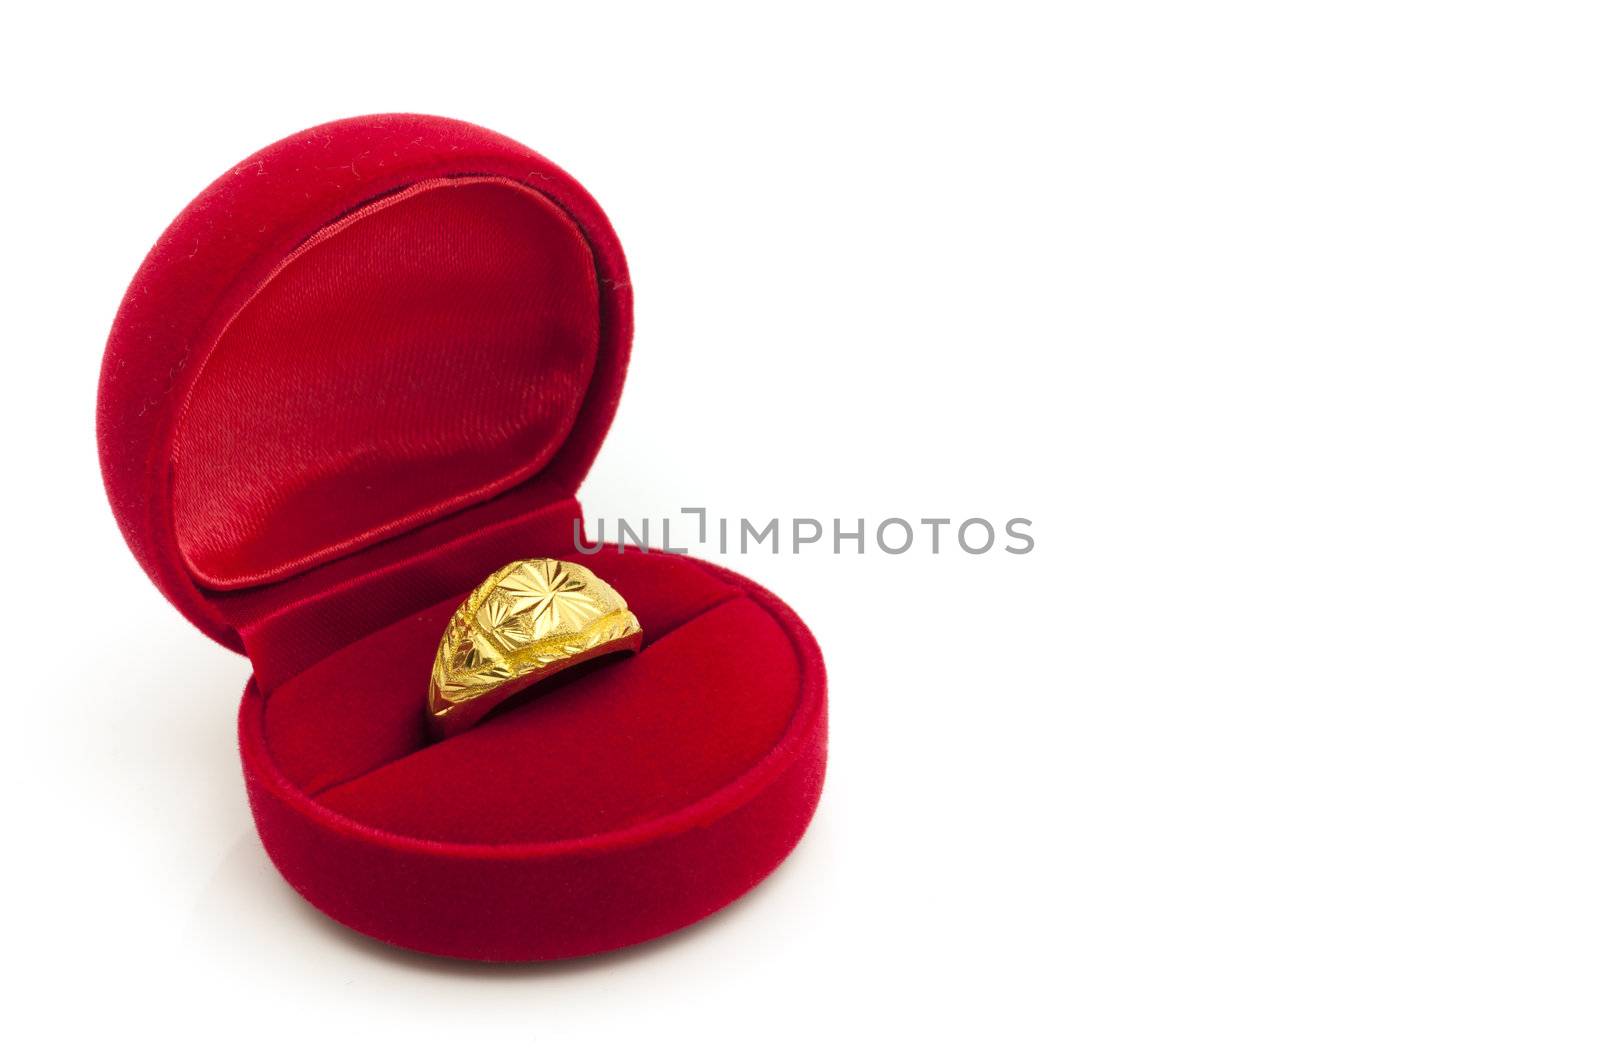 Red velvet box with golden ring